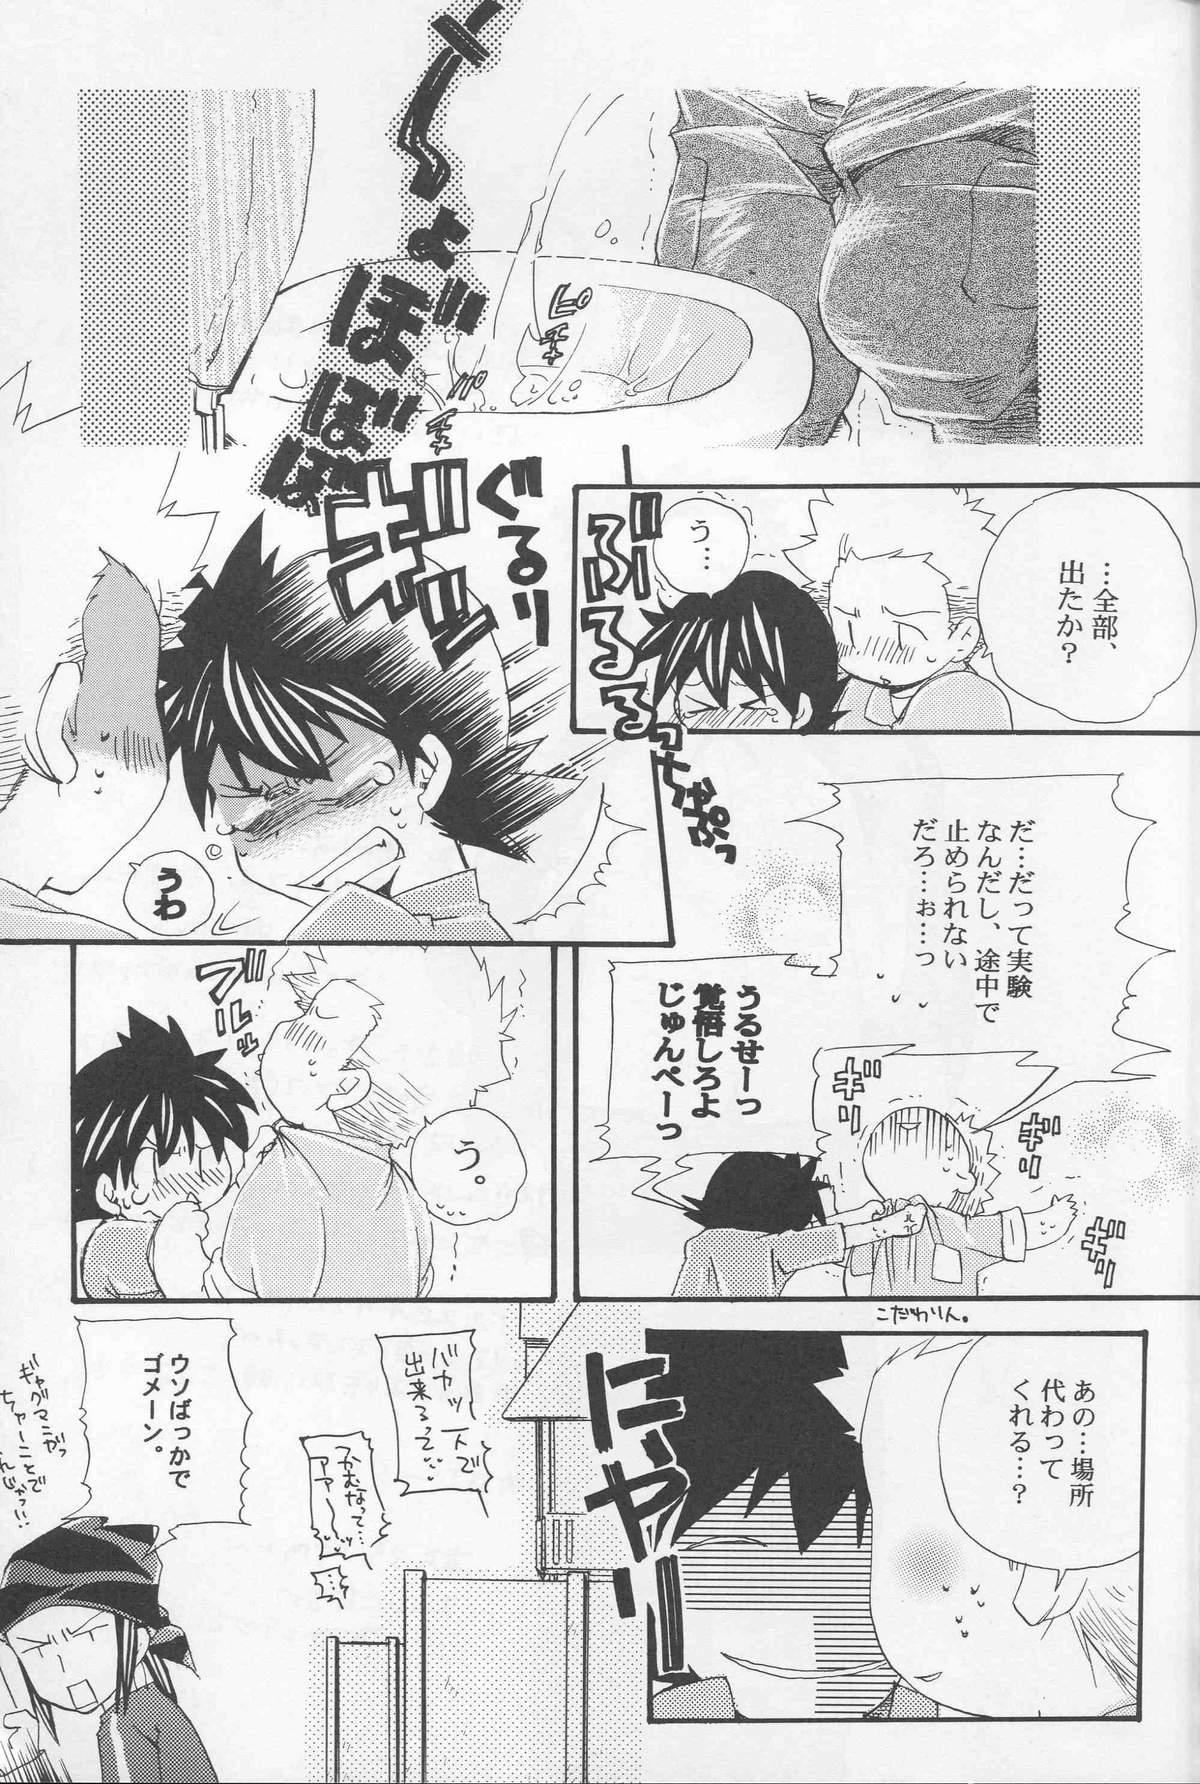 Blow Job Contest JTH - Digimon frontier Nerd - Page 8